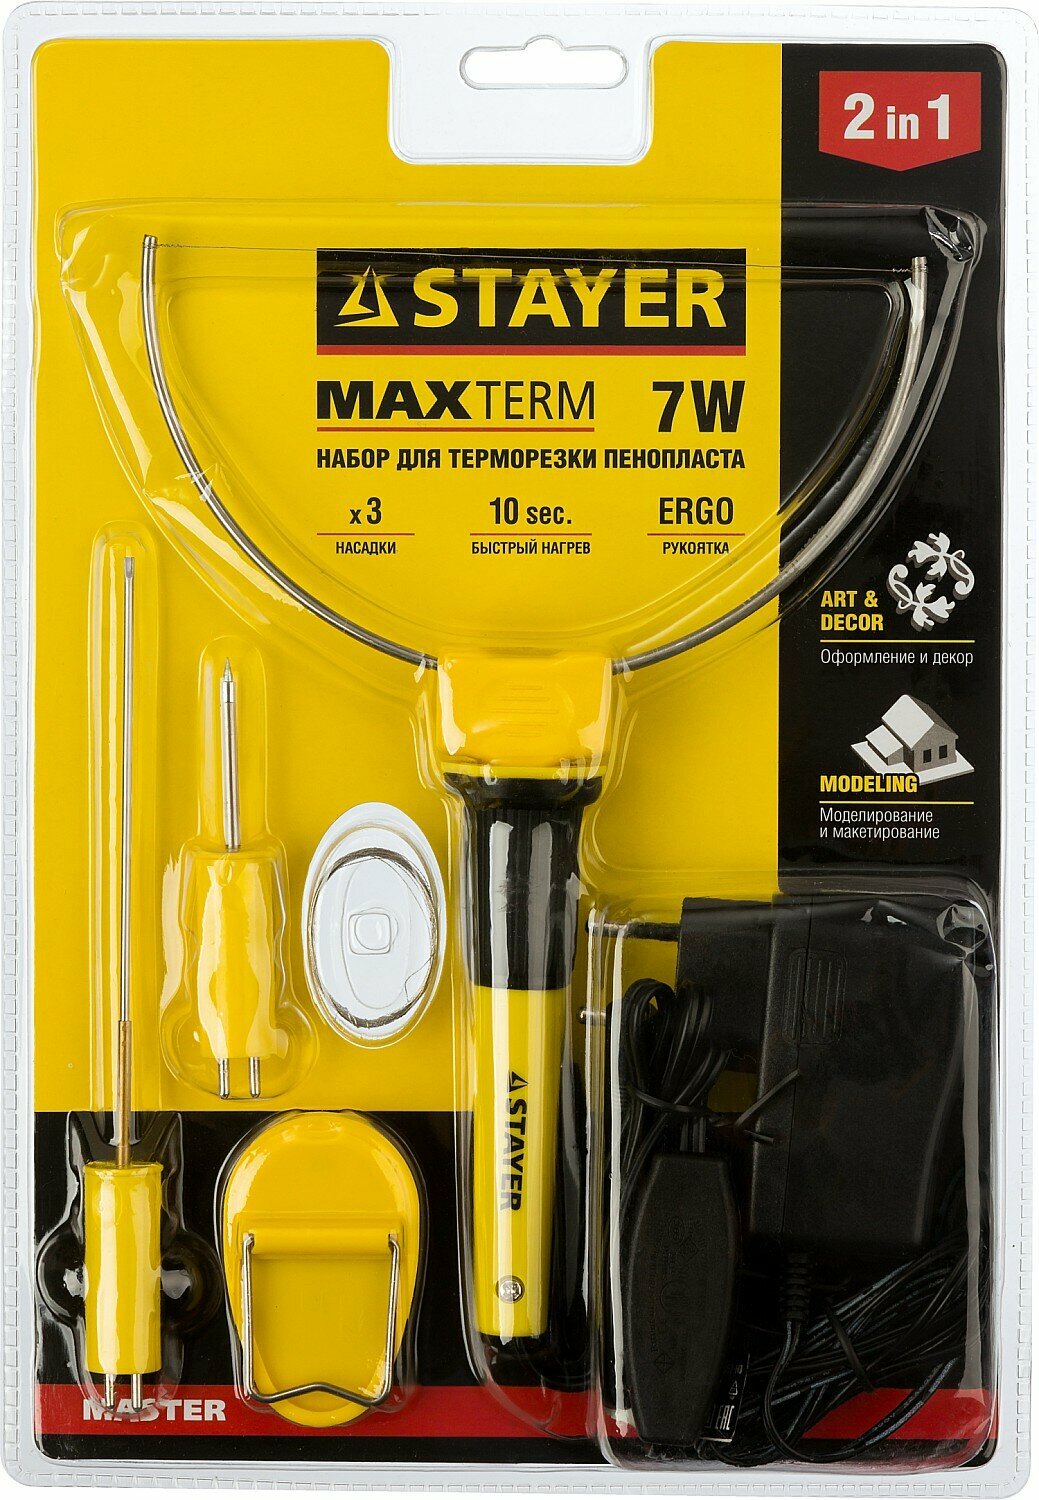 STAYER MAXterm 7Вт, в наборе: 3 насадки, аккуратный рез пенопласта+пластика, Прибор для художественной резки (45257-H3)